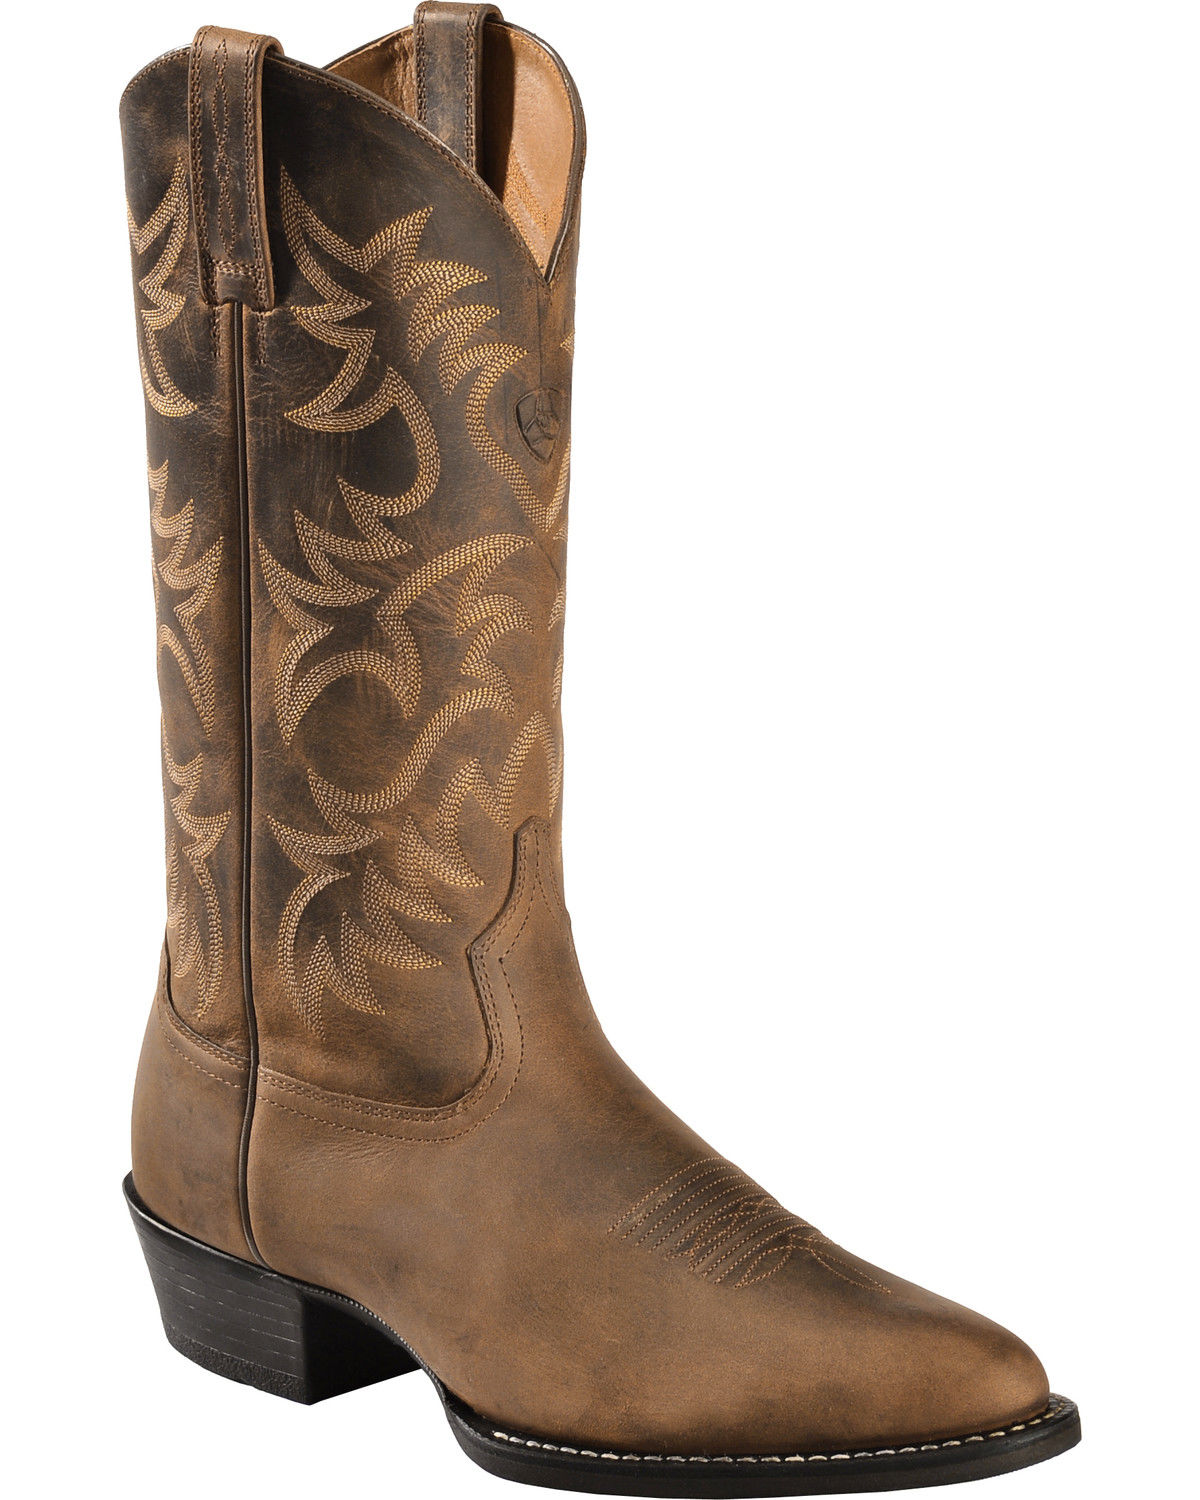 Ariat Heritage Cowboy Boots - Medium Toe, Distressed, hi-res